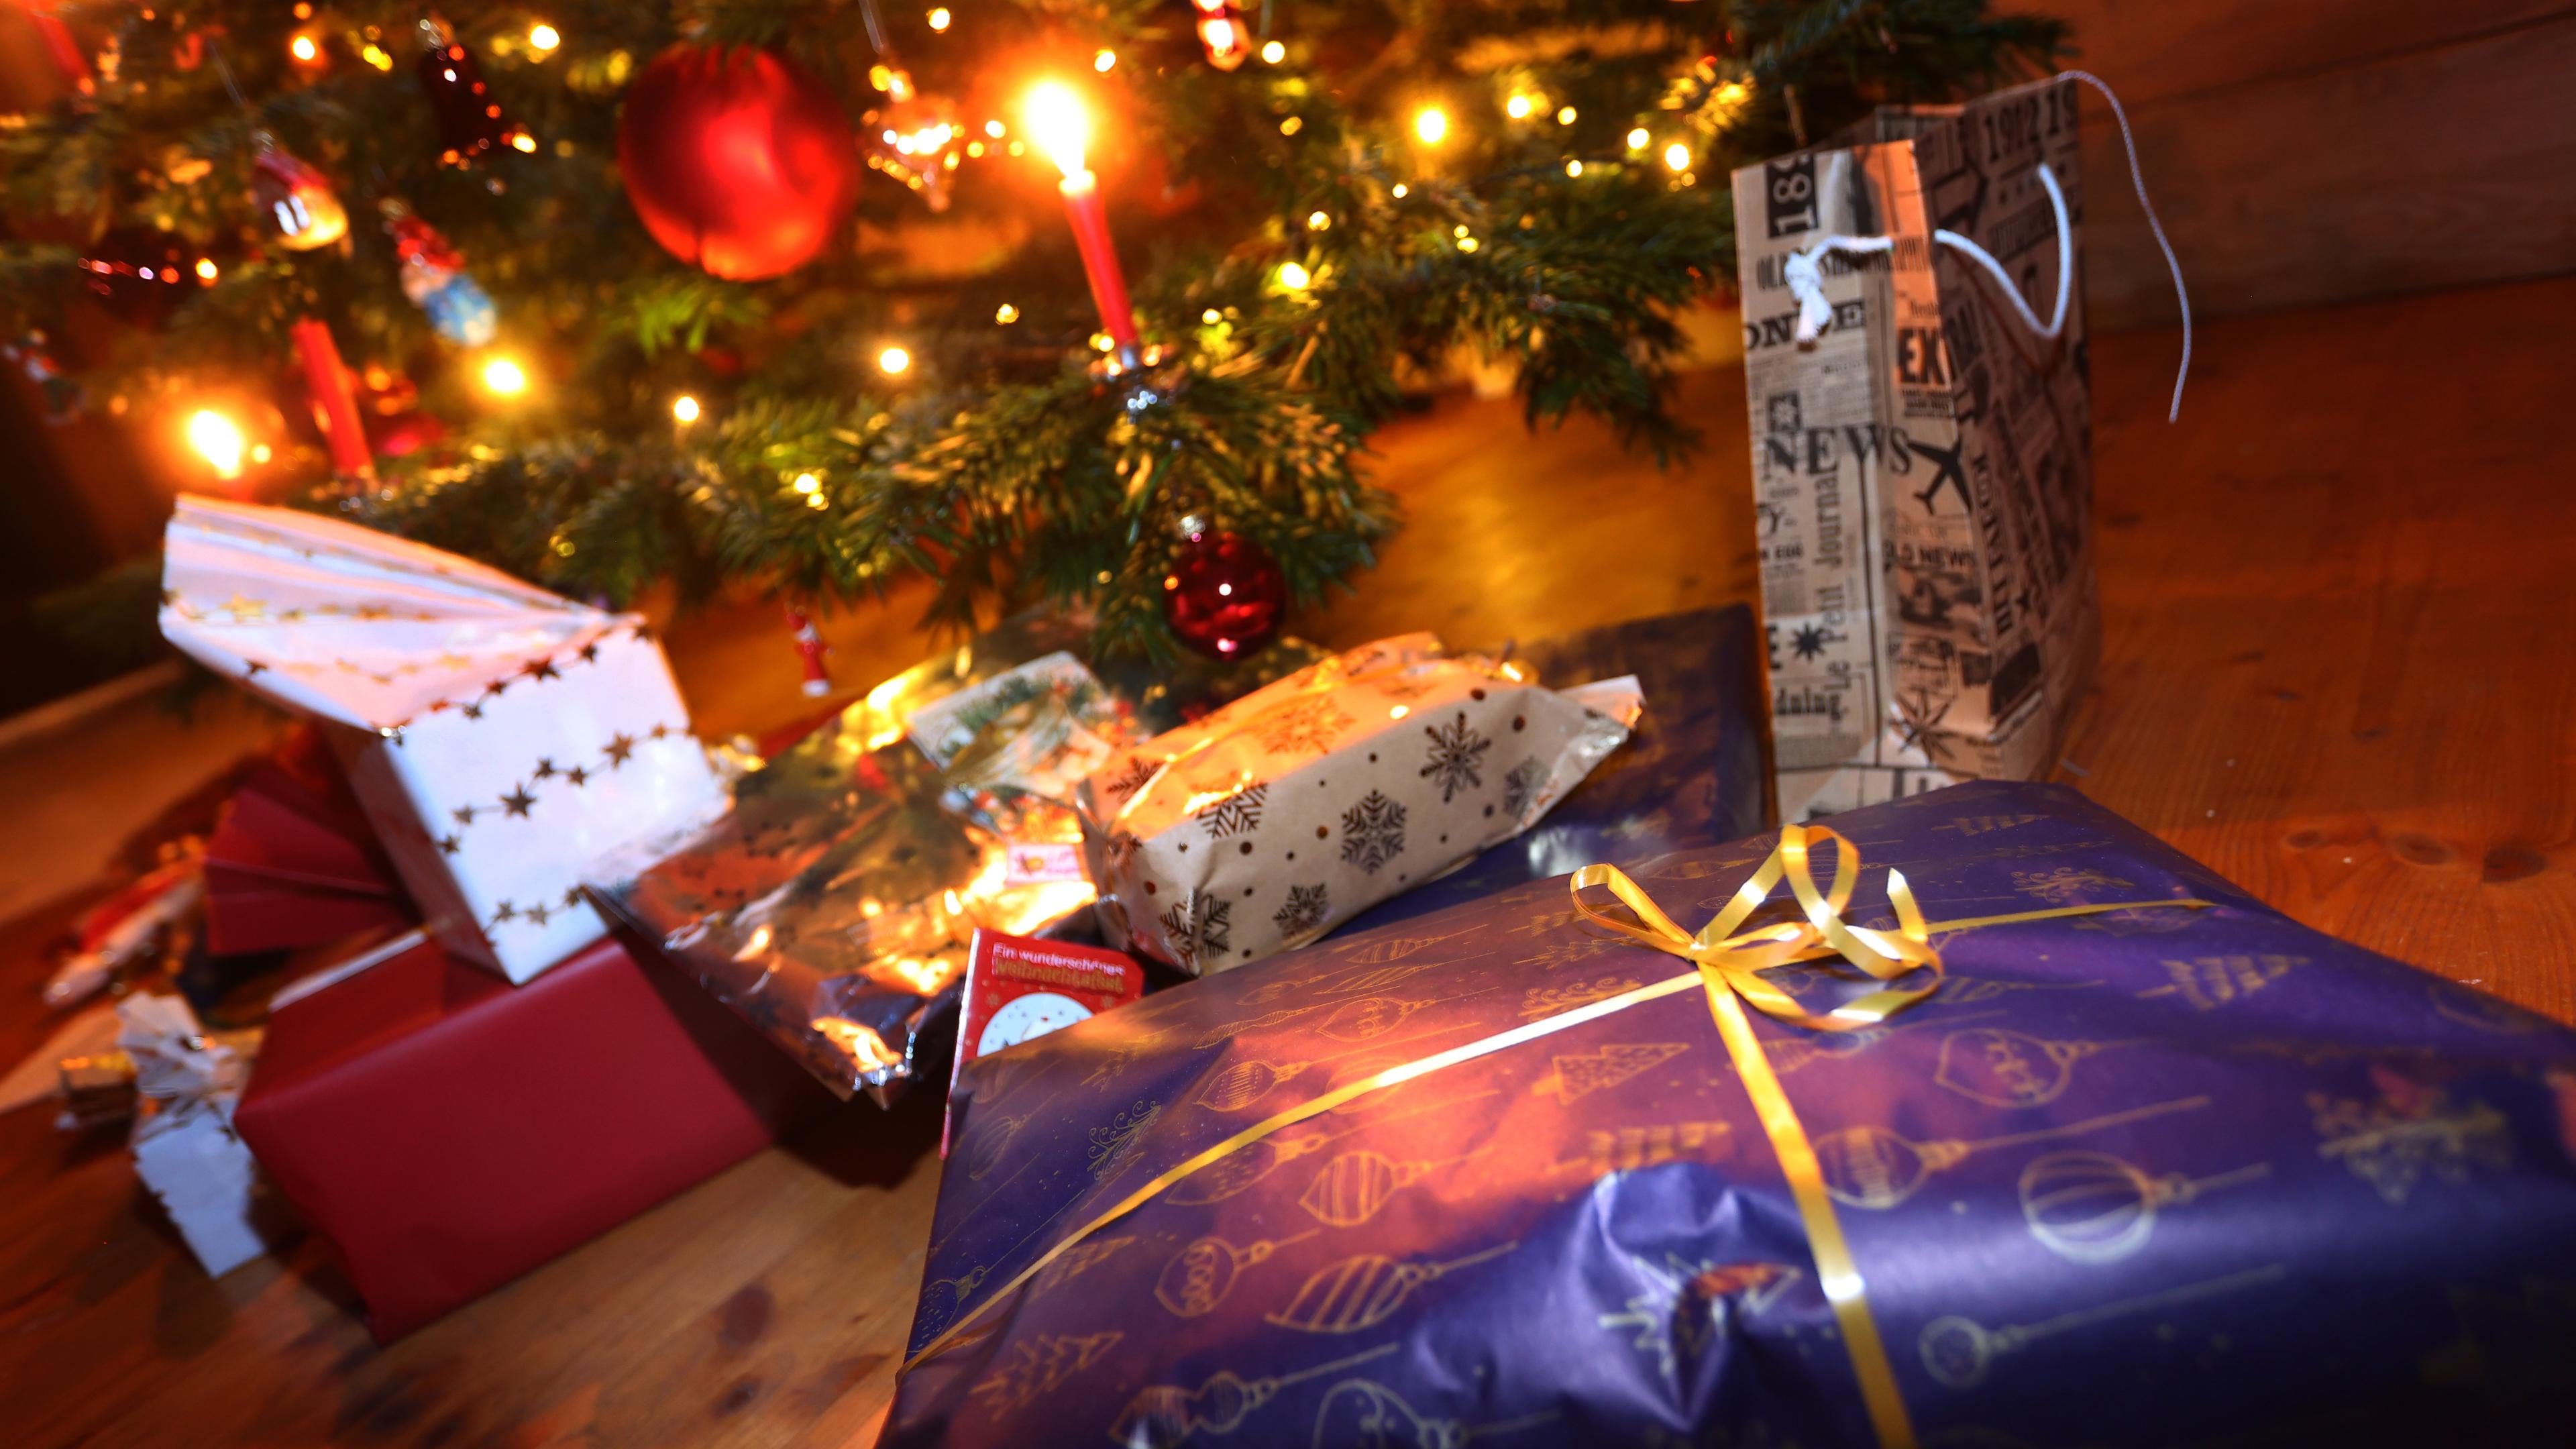 Verpackte Geschenke liegen in einem Wohnzimmer unter einem festlich geschmücktem Weihnachtsbaum, aufgenommen am 24.12.2021